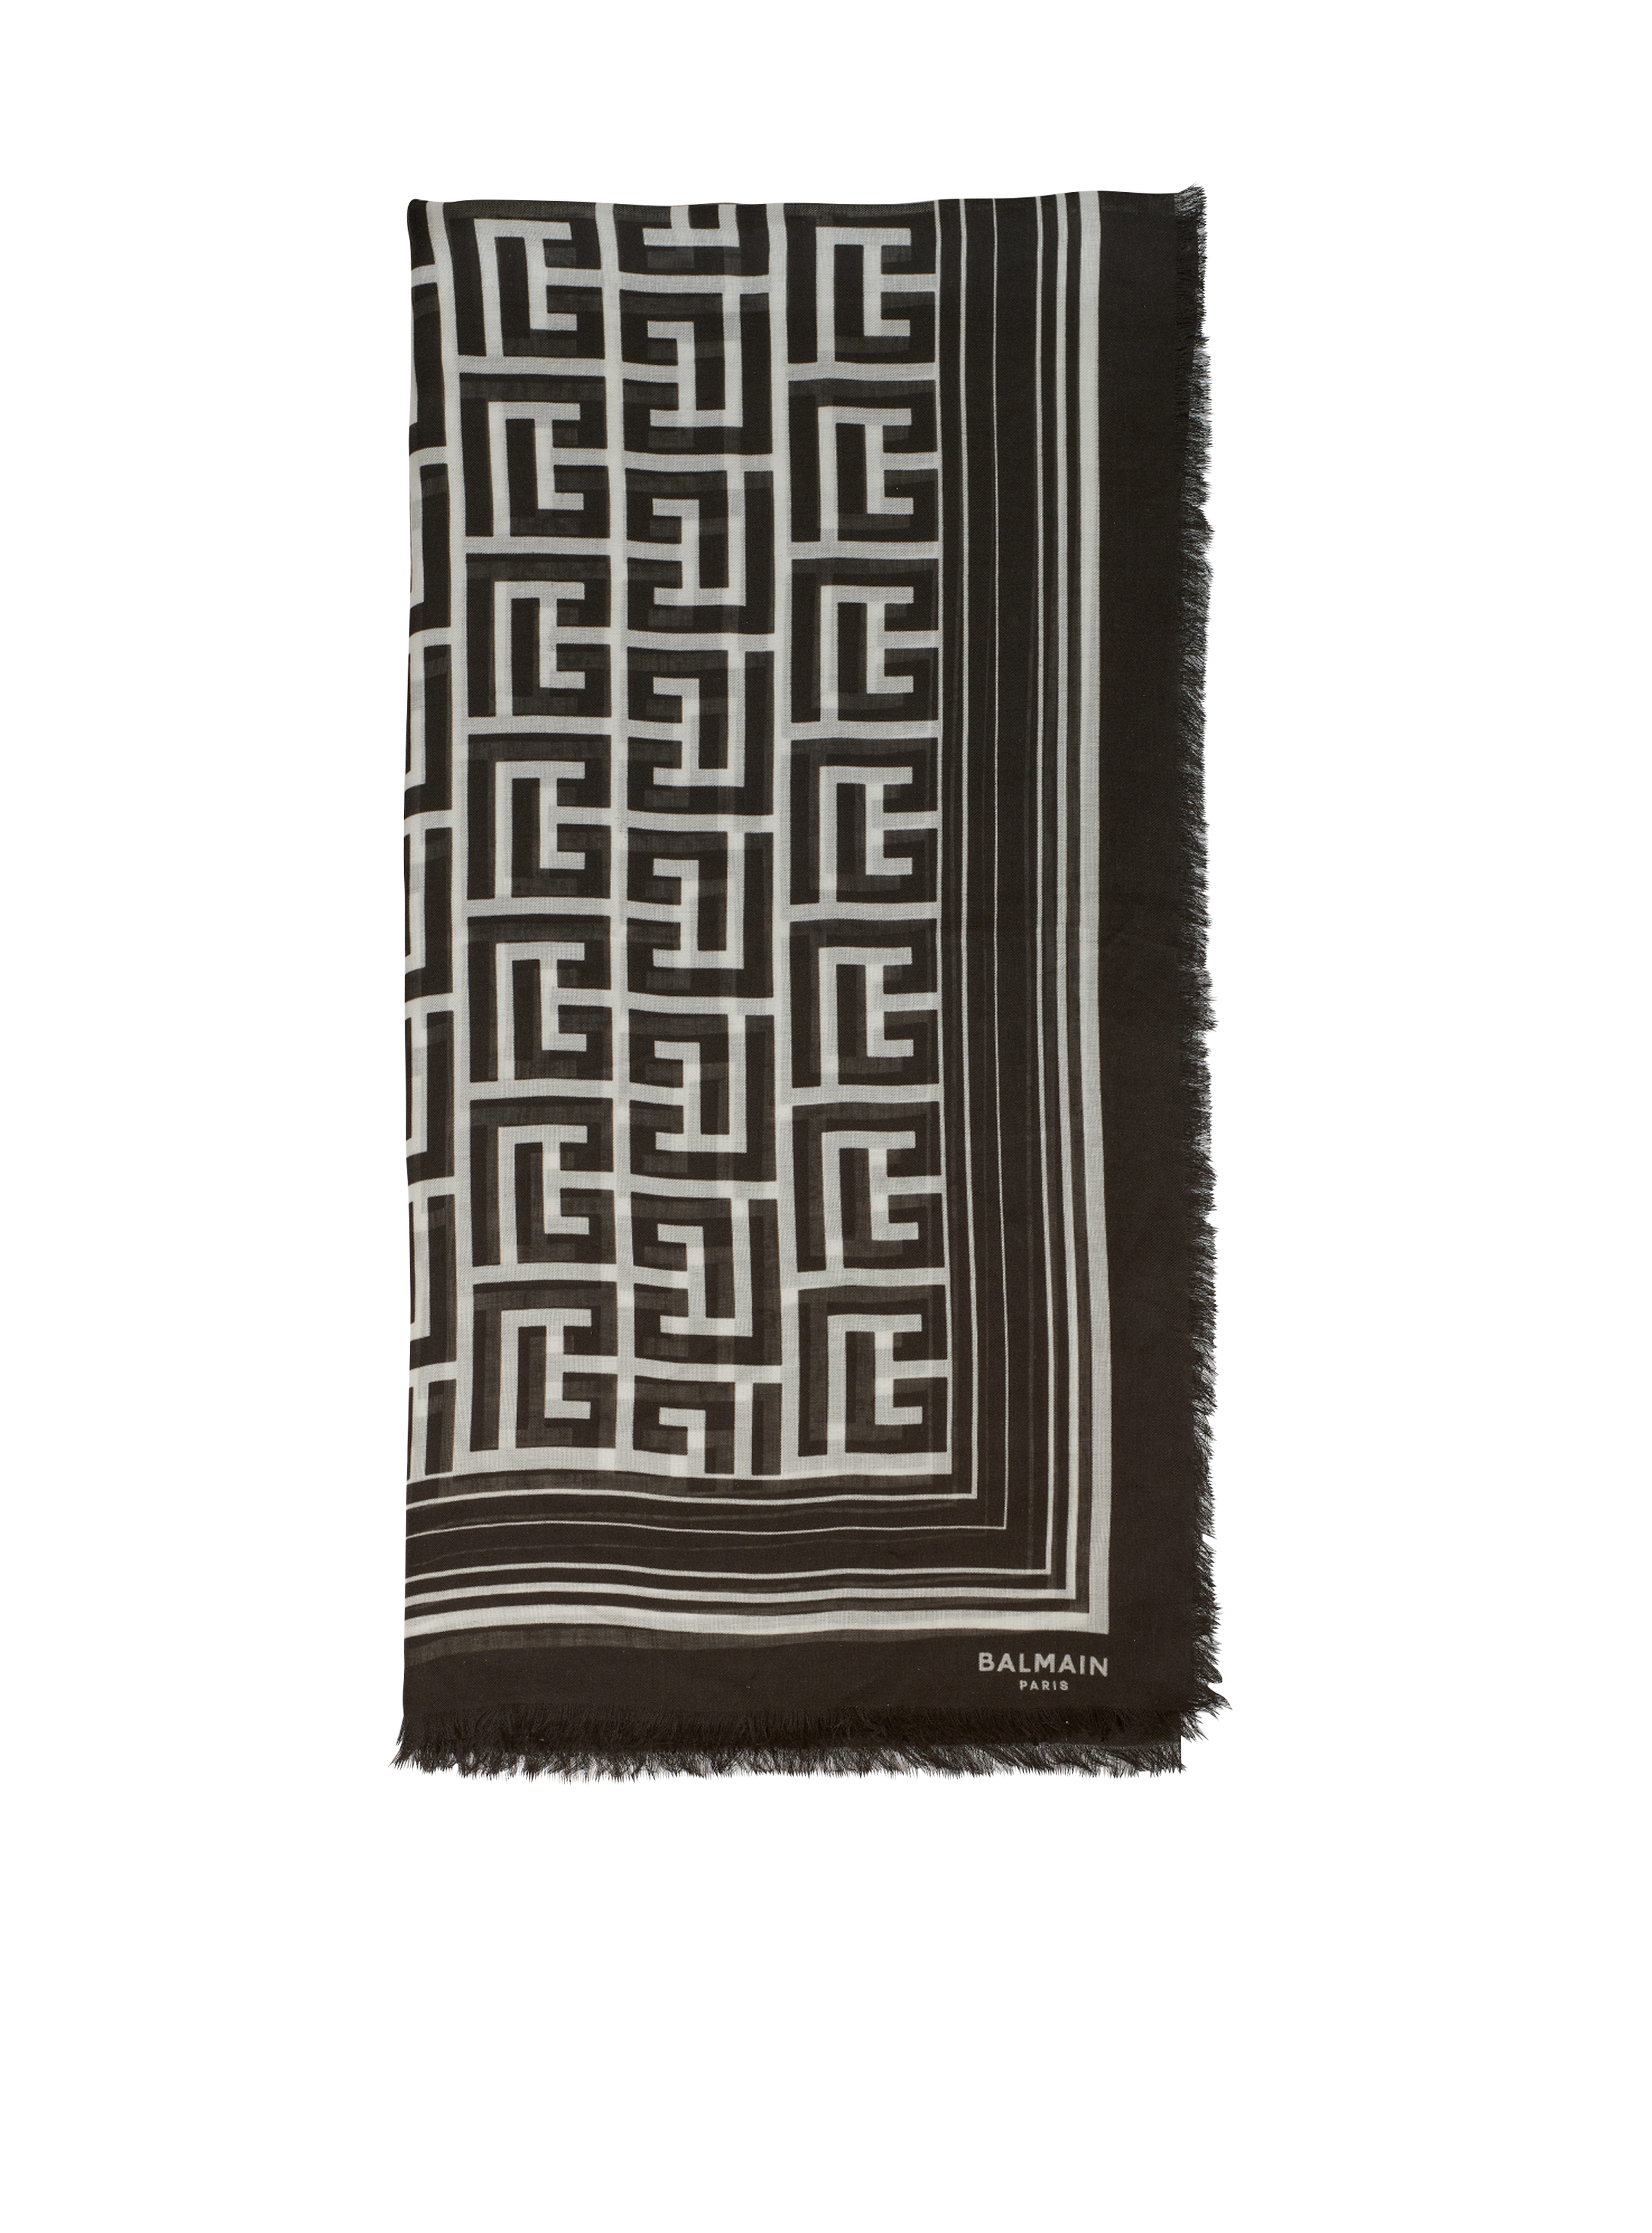 モダール スカーフ Balmainモノグラムパターン, 黒